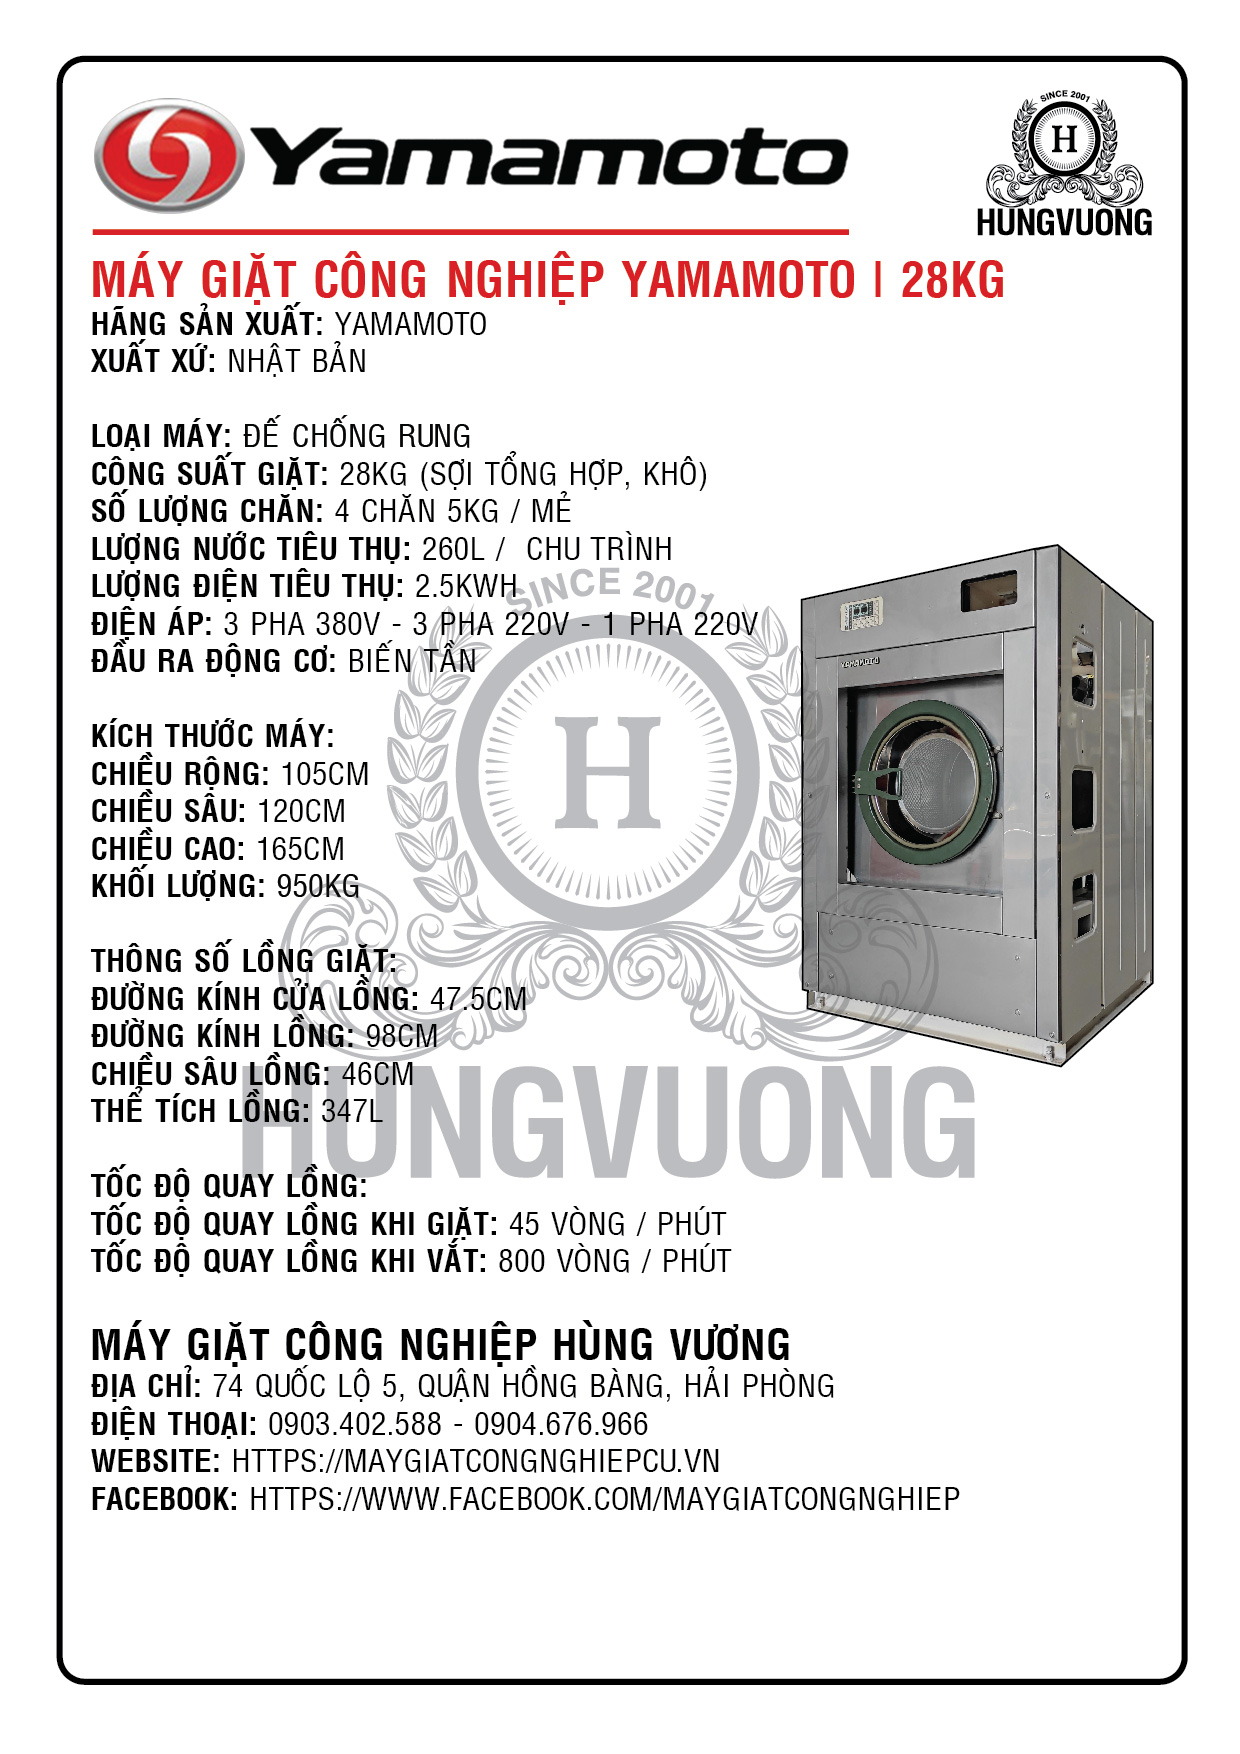 Thông số kỹ thuật máy giặt công nghiệp YAMAMOTO 28kg, chân chống rung, biến tần, Nhật Bản